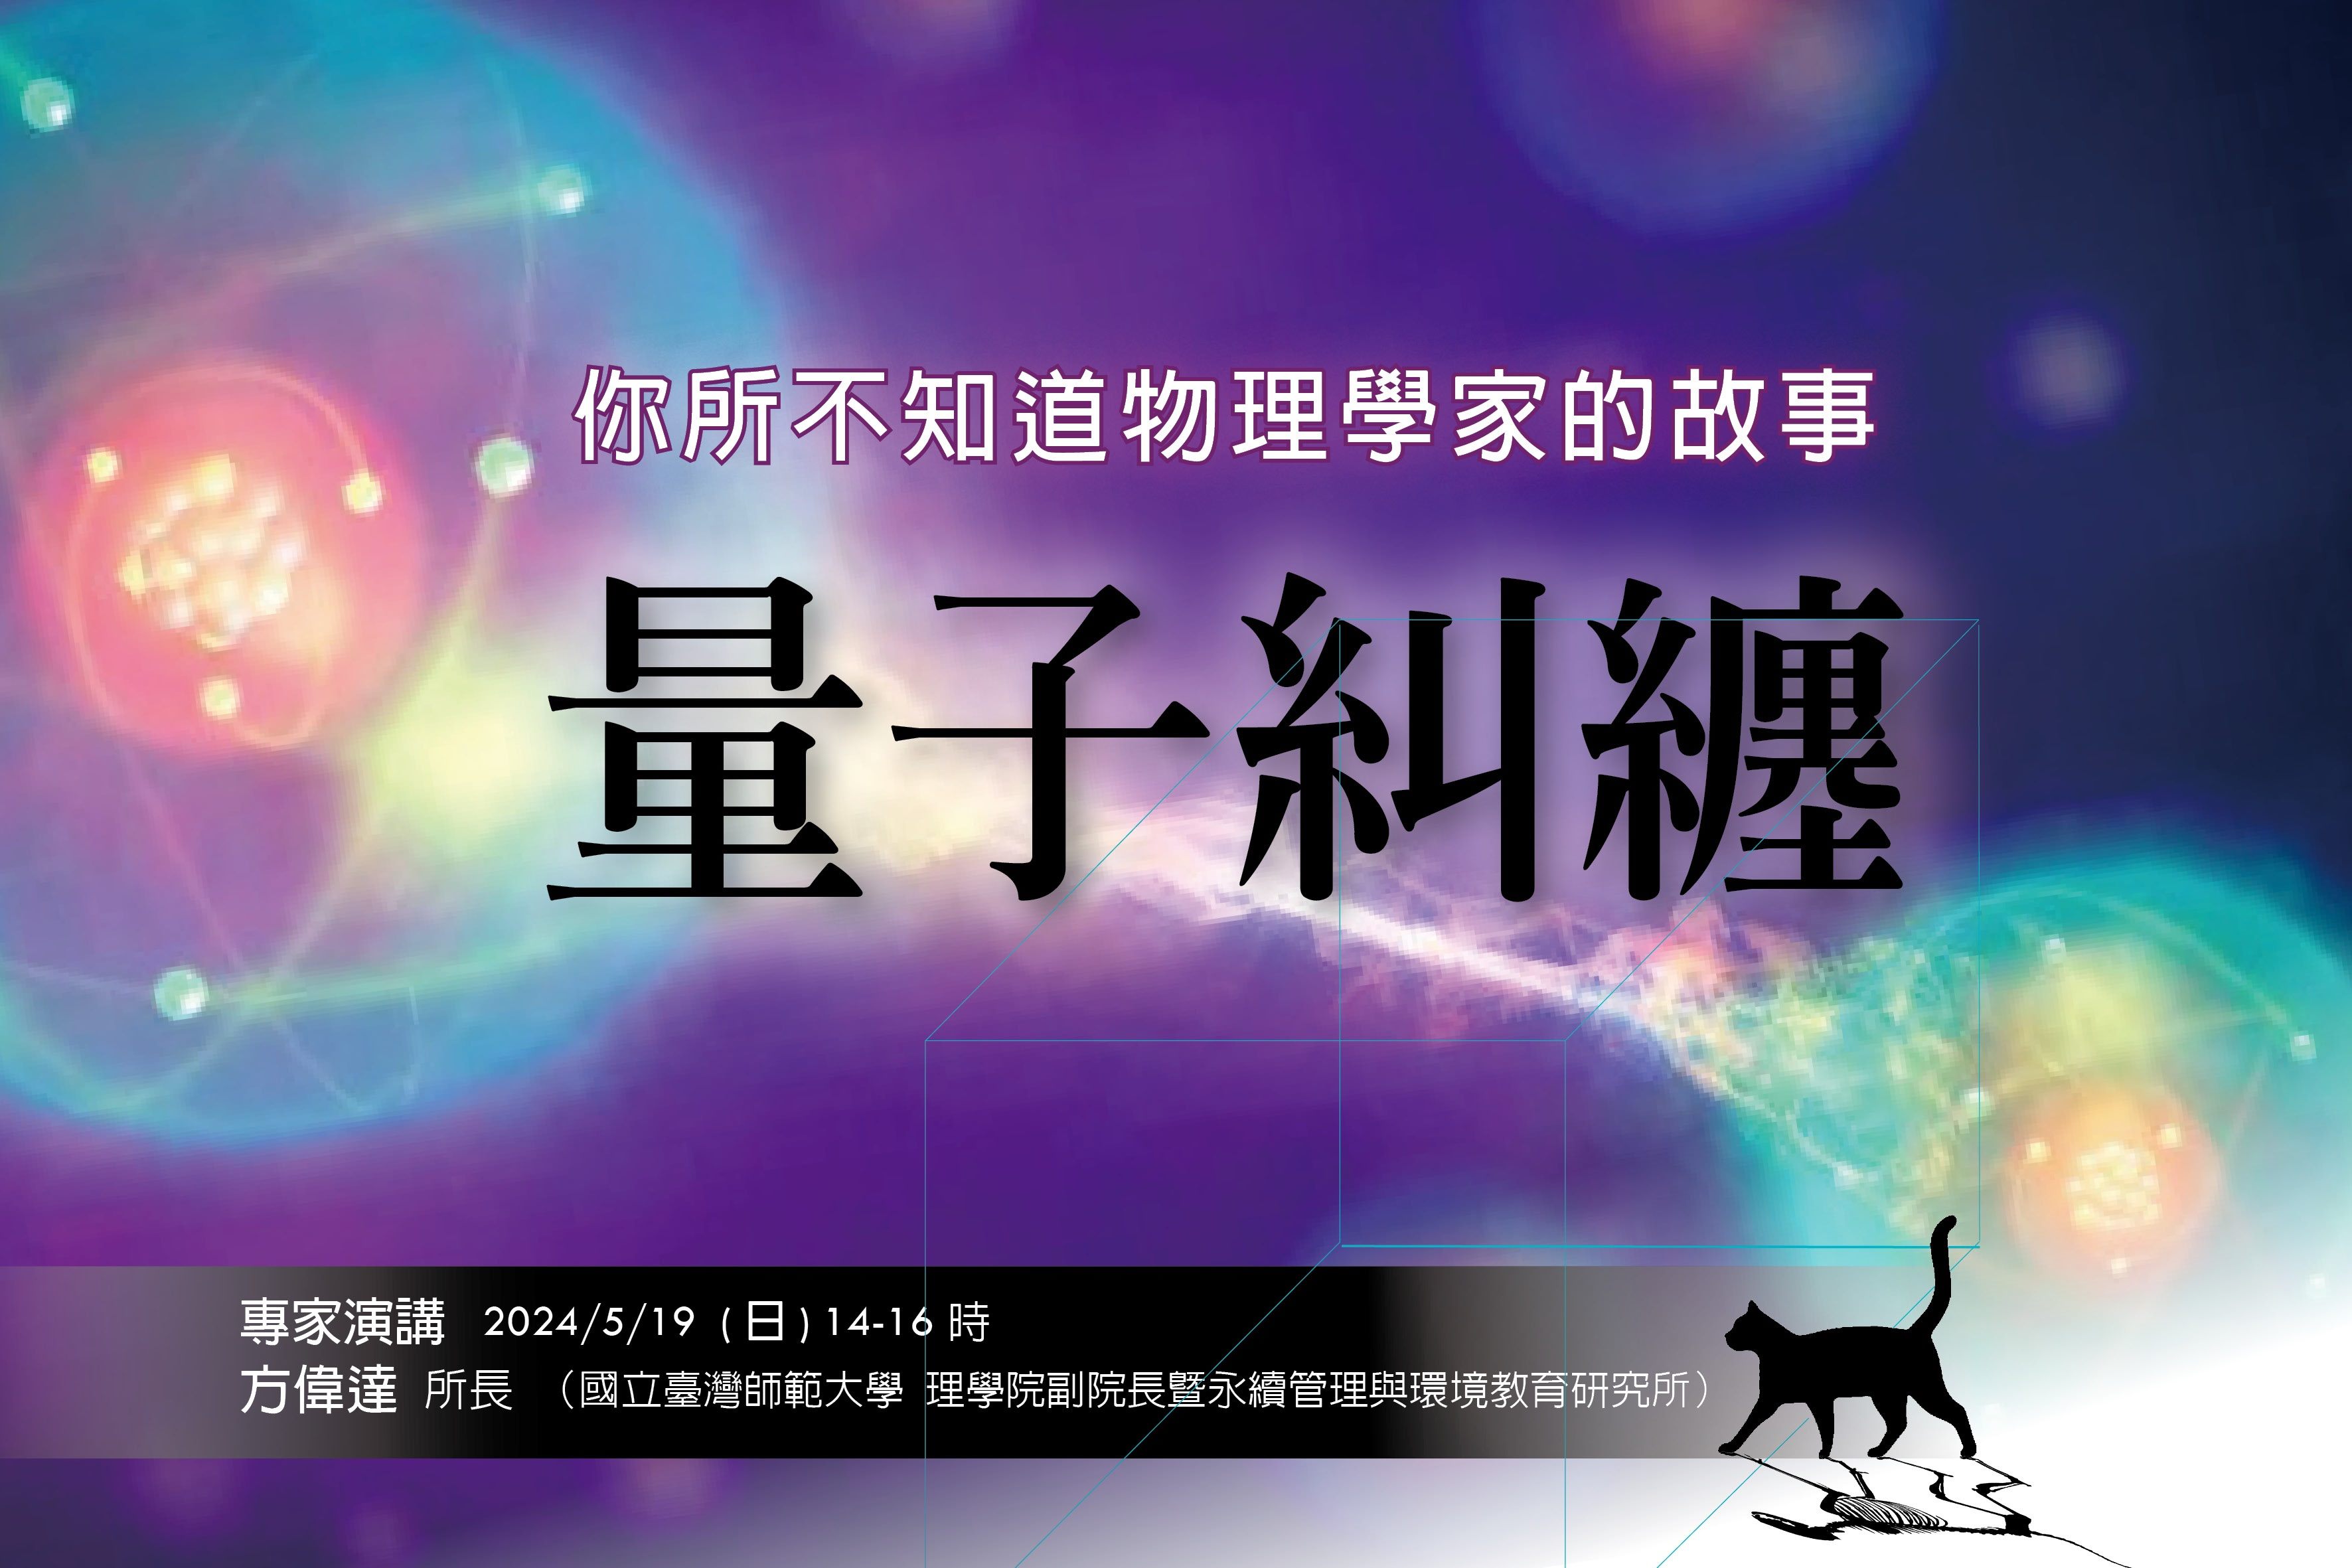 臺北天文館講座  帶您進入量子物理的奇幻世界！